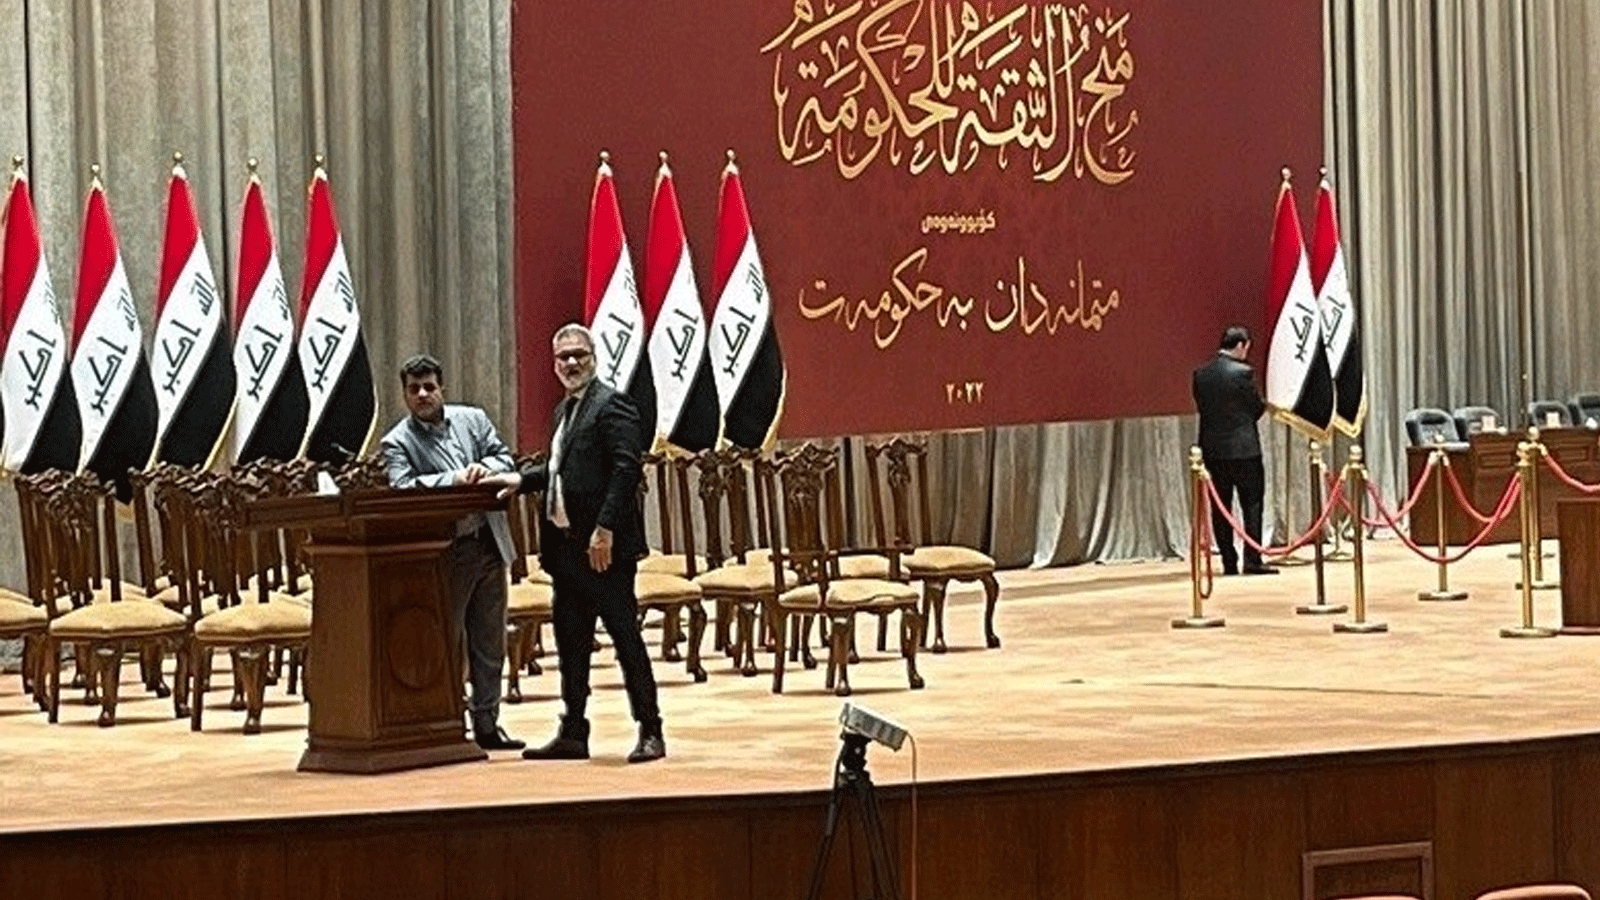 لقطة لتحضيرات انعقاد البرلمان العراقي غداً الخميس للتصويت على وزراء حكومة السوداني (تويتر)